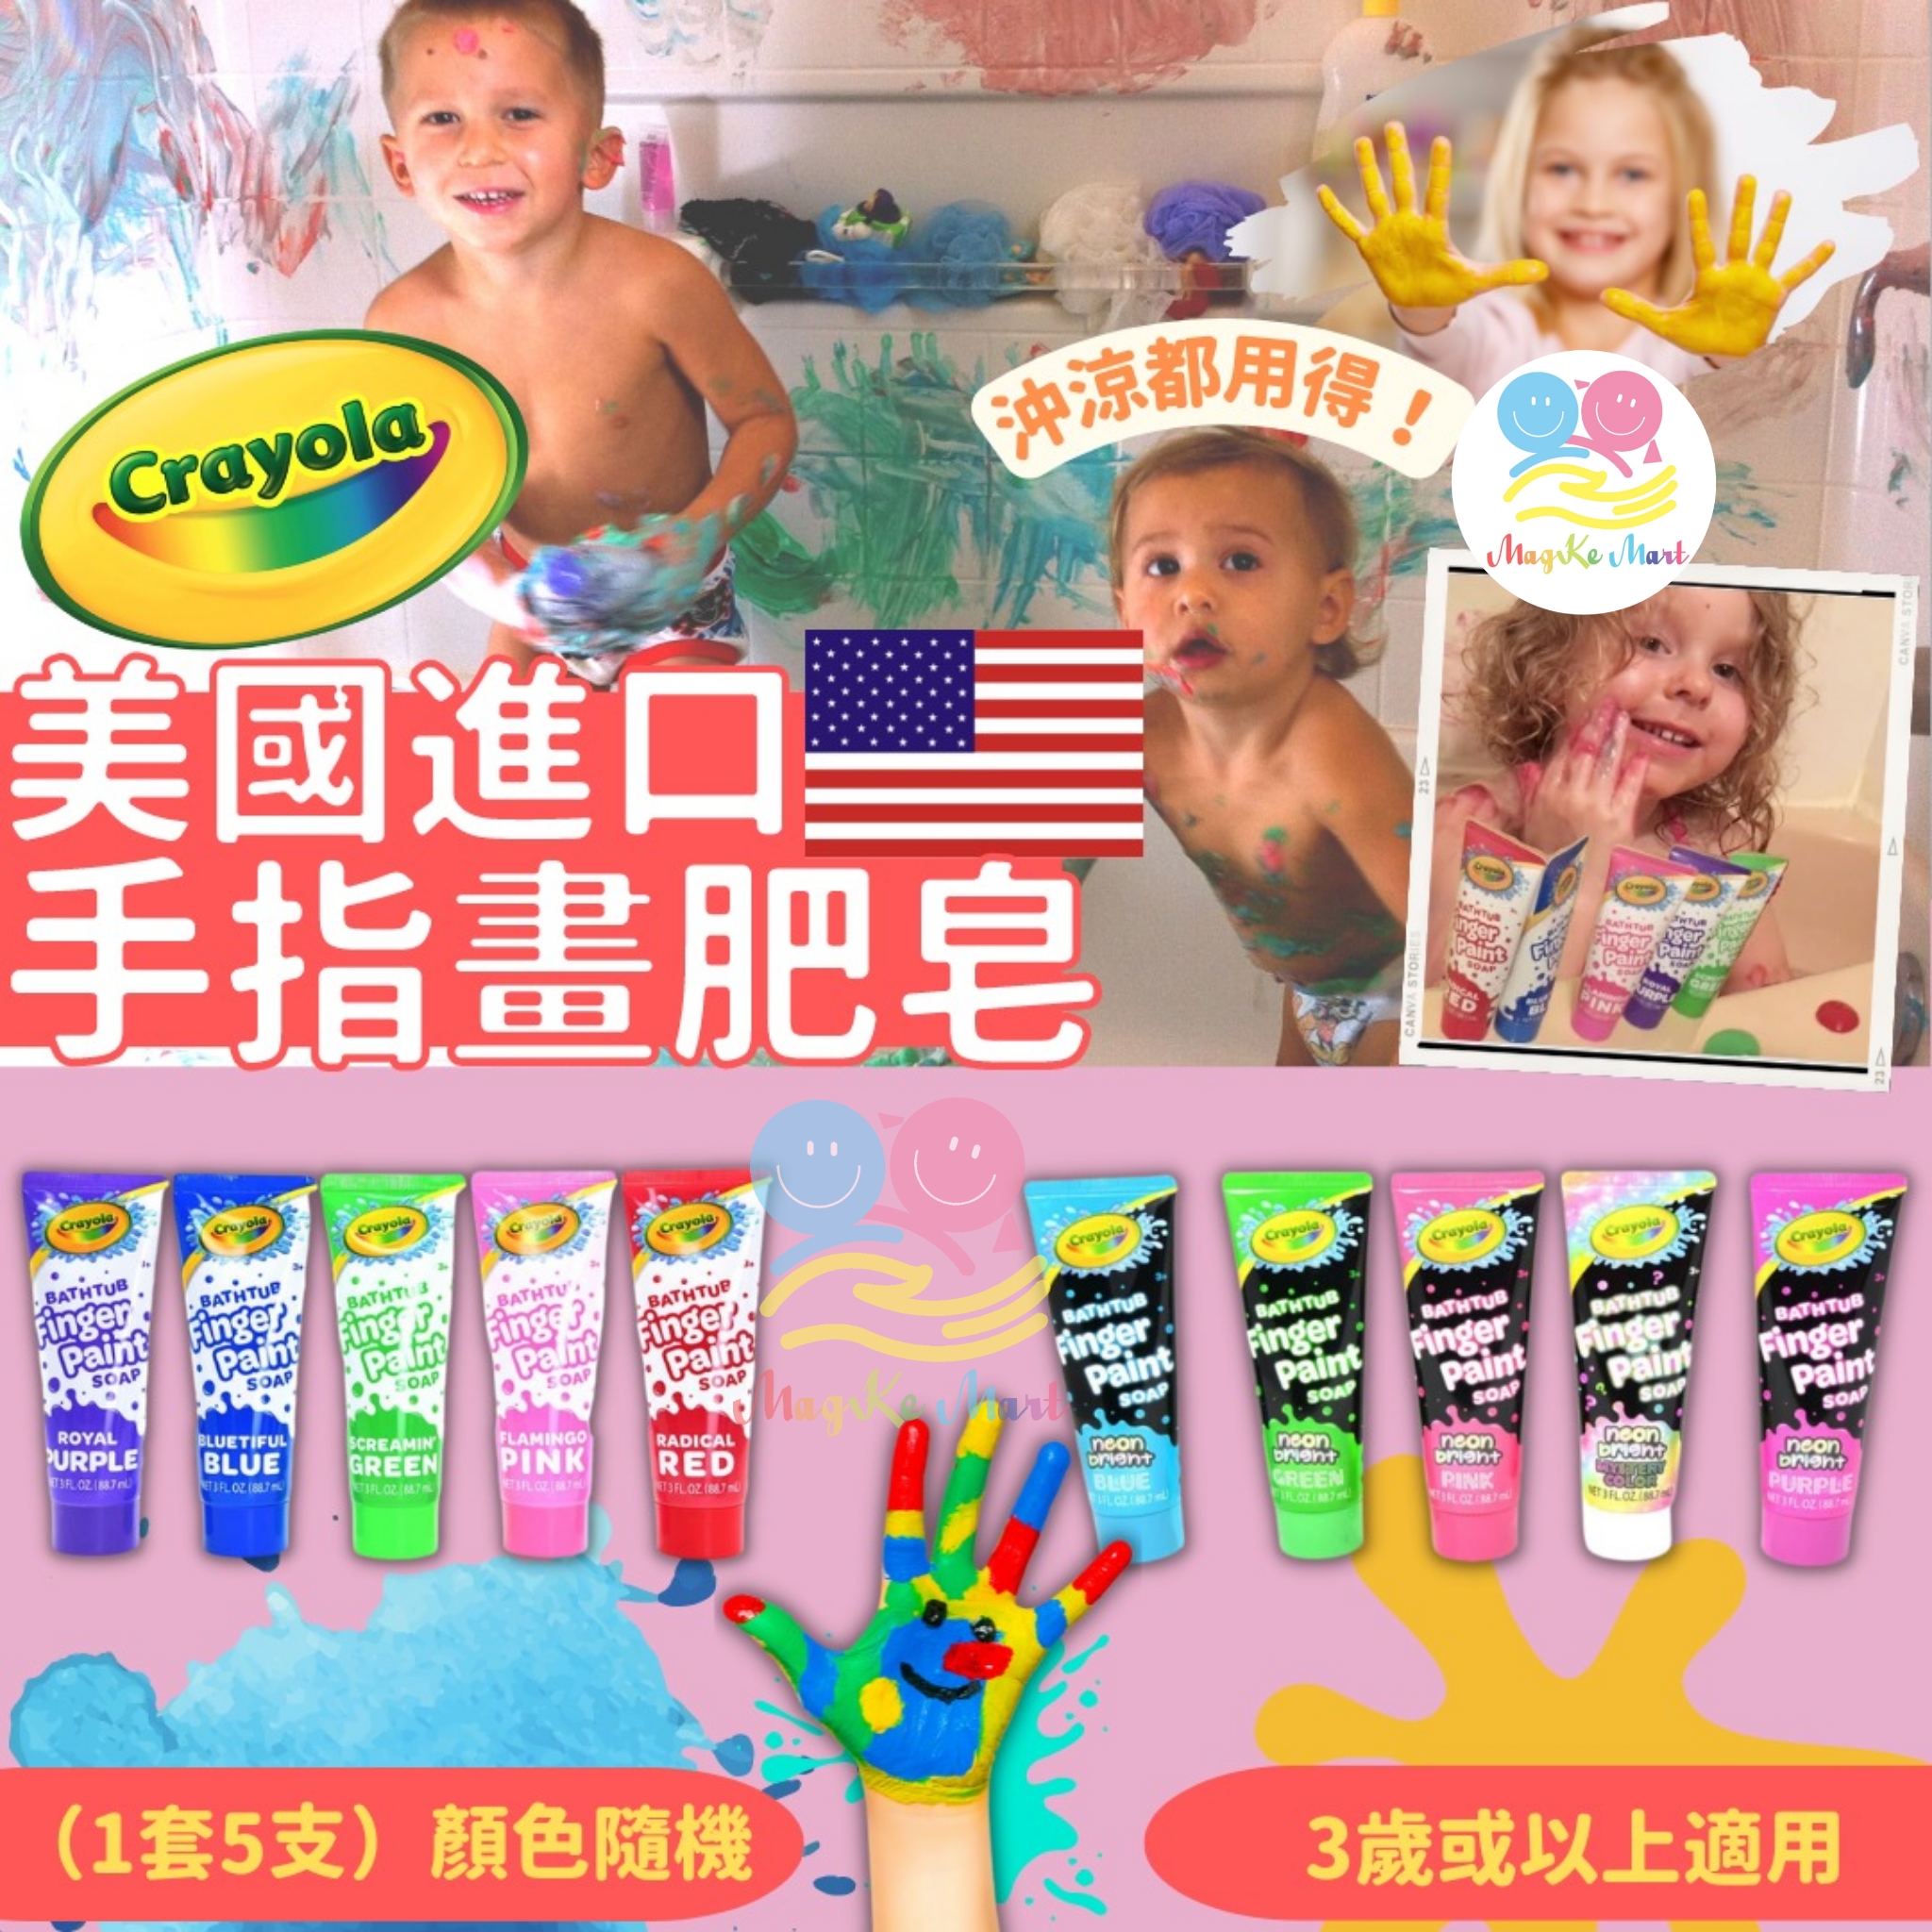 美國 Crayola 手指畫肥皂(1套5支)(顏色隨機)